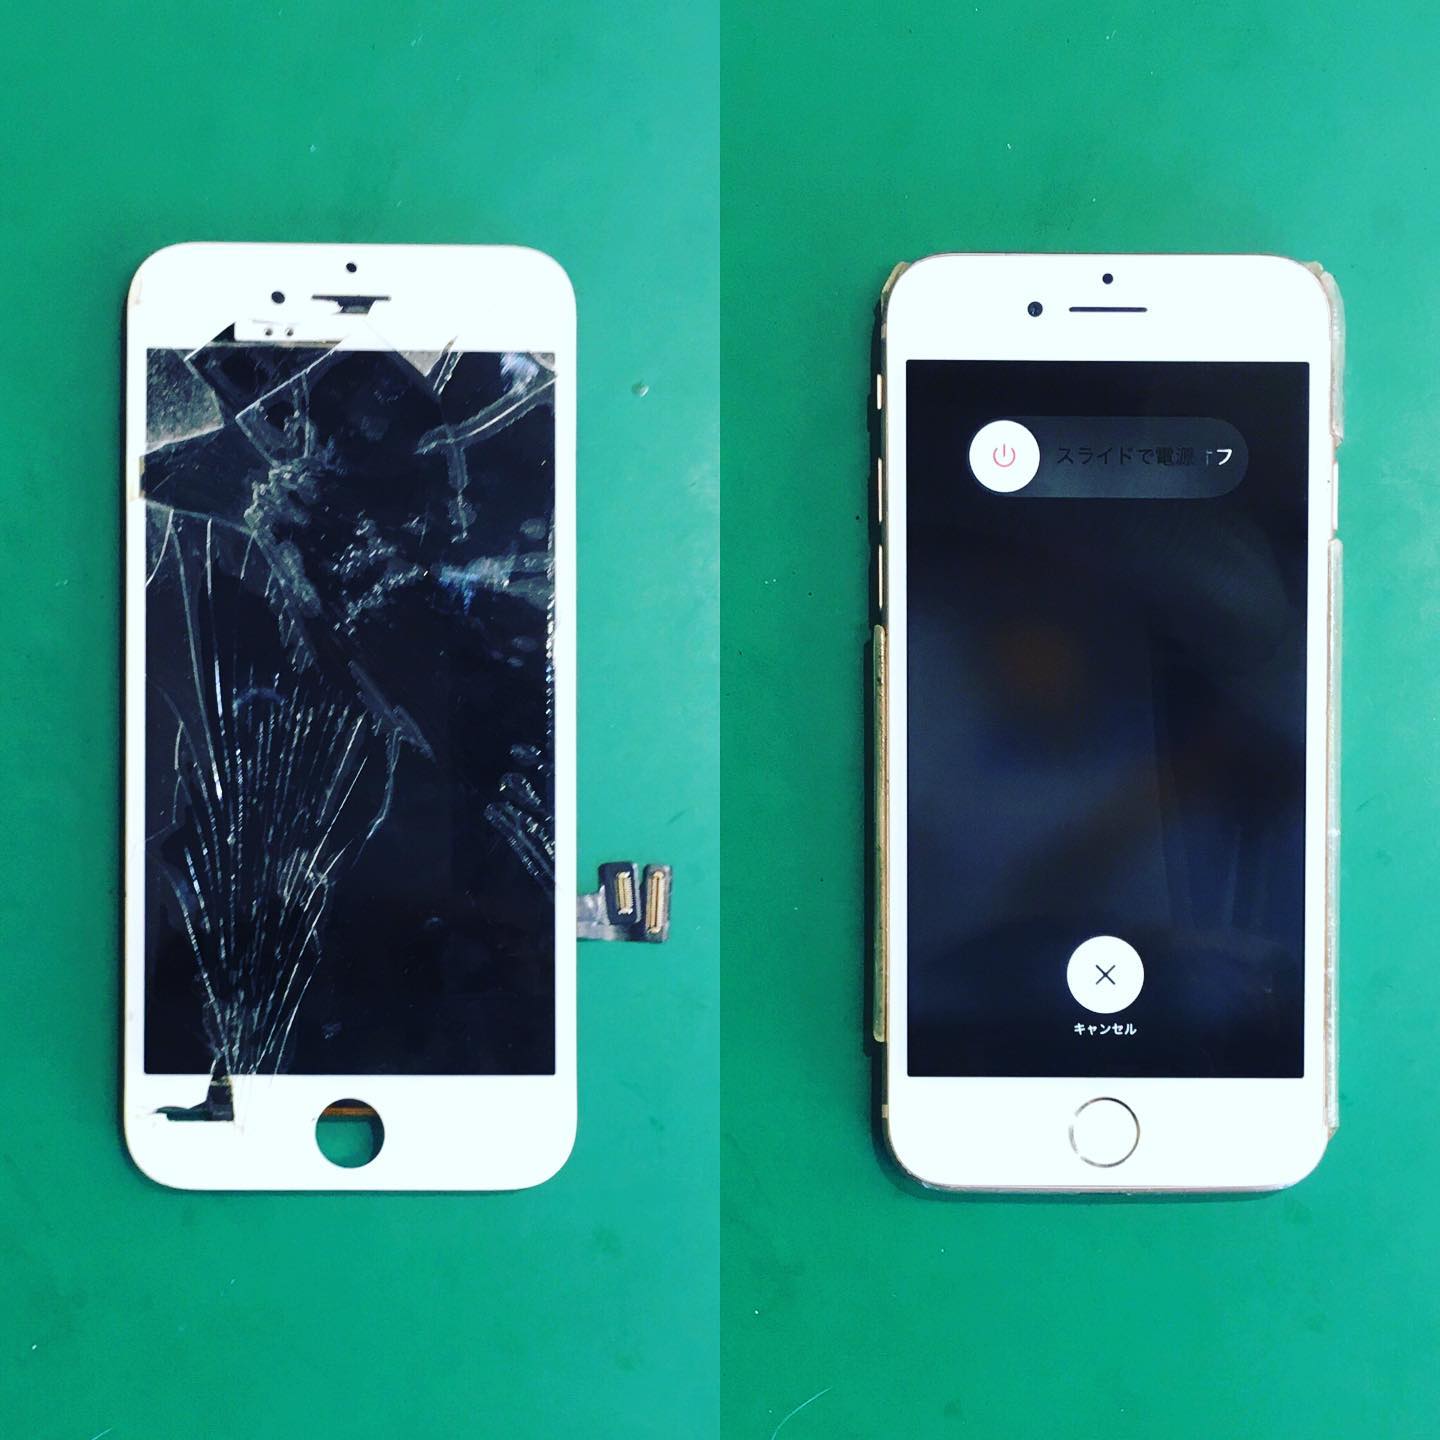 名古屋市中区のS様がiPhone8の液晶修理でご来店📲

損傷が酷くなんと画面が映りません、、
ですが30分程でデータはそのまま綺麗に直ります🥰
喜んで頂けて嬉しいです⭐️

#愛知県 #名古屋 #中区 #栄 #大須 #iPhone修理 #iPhone8 #即日修理 #最速修理 #液晶修理